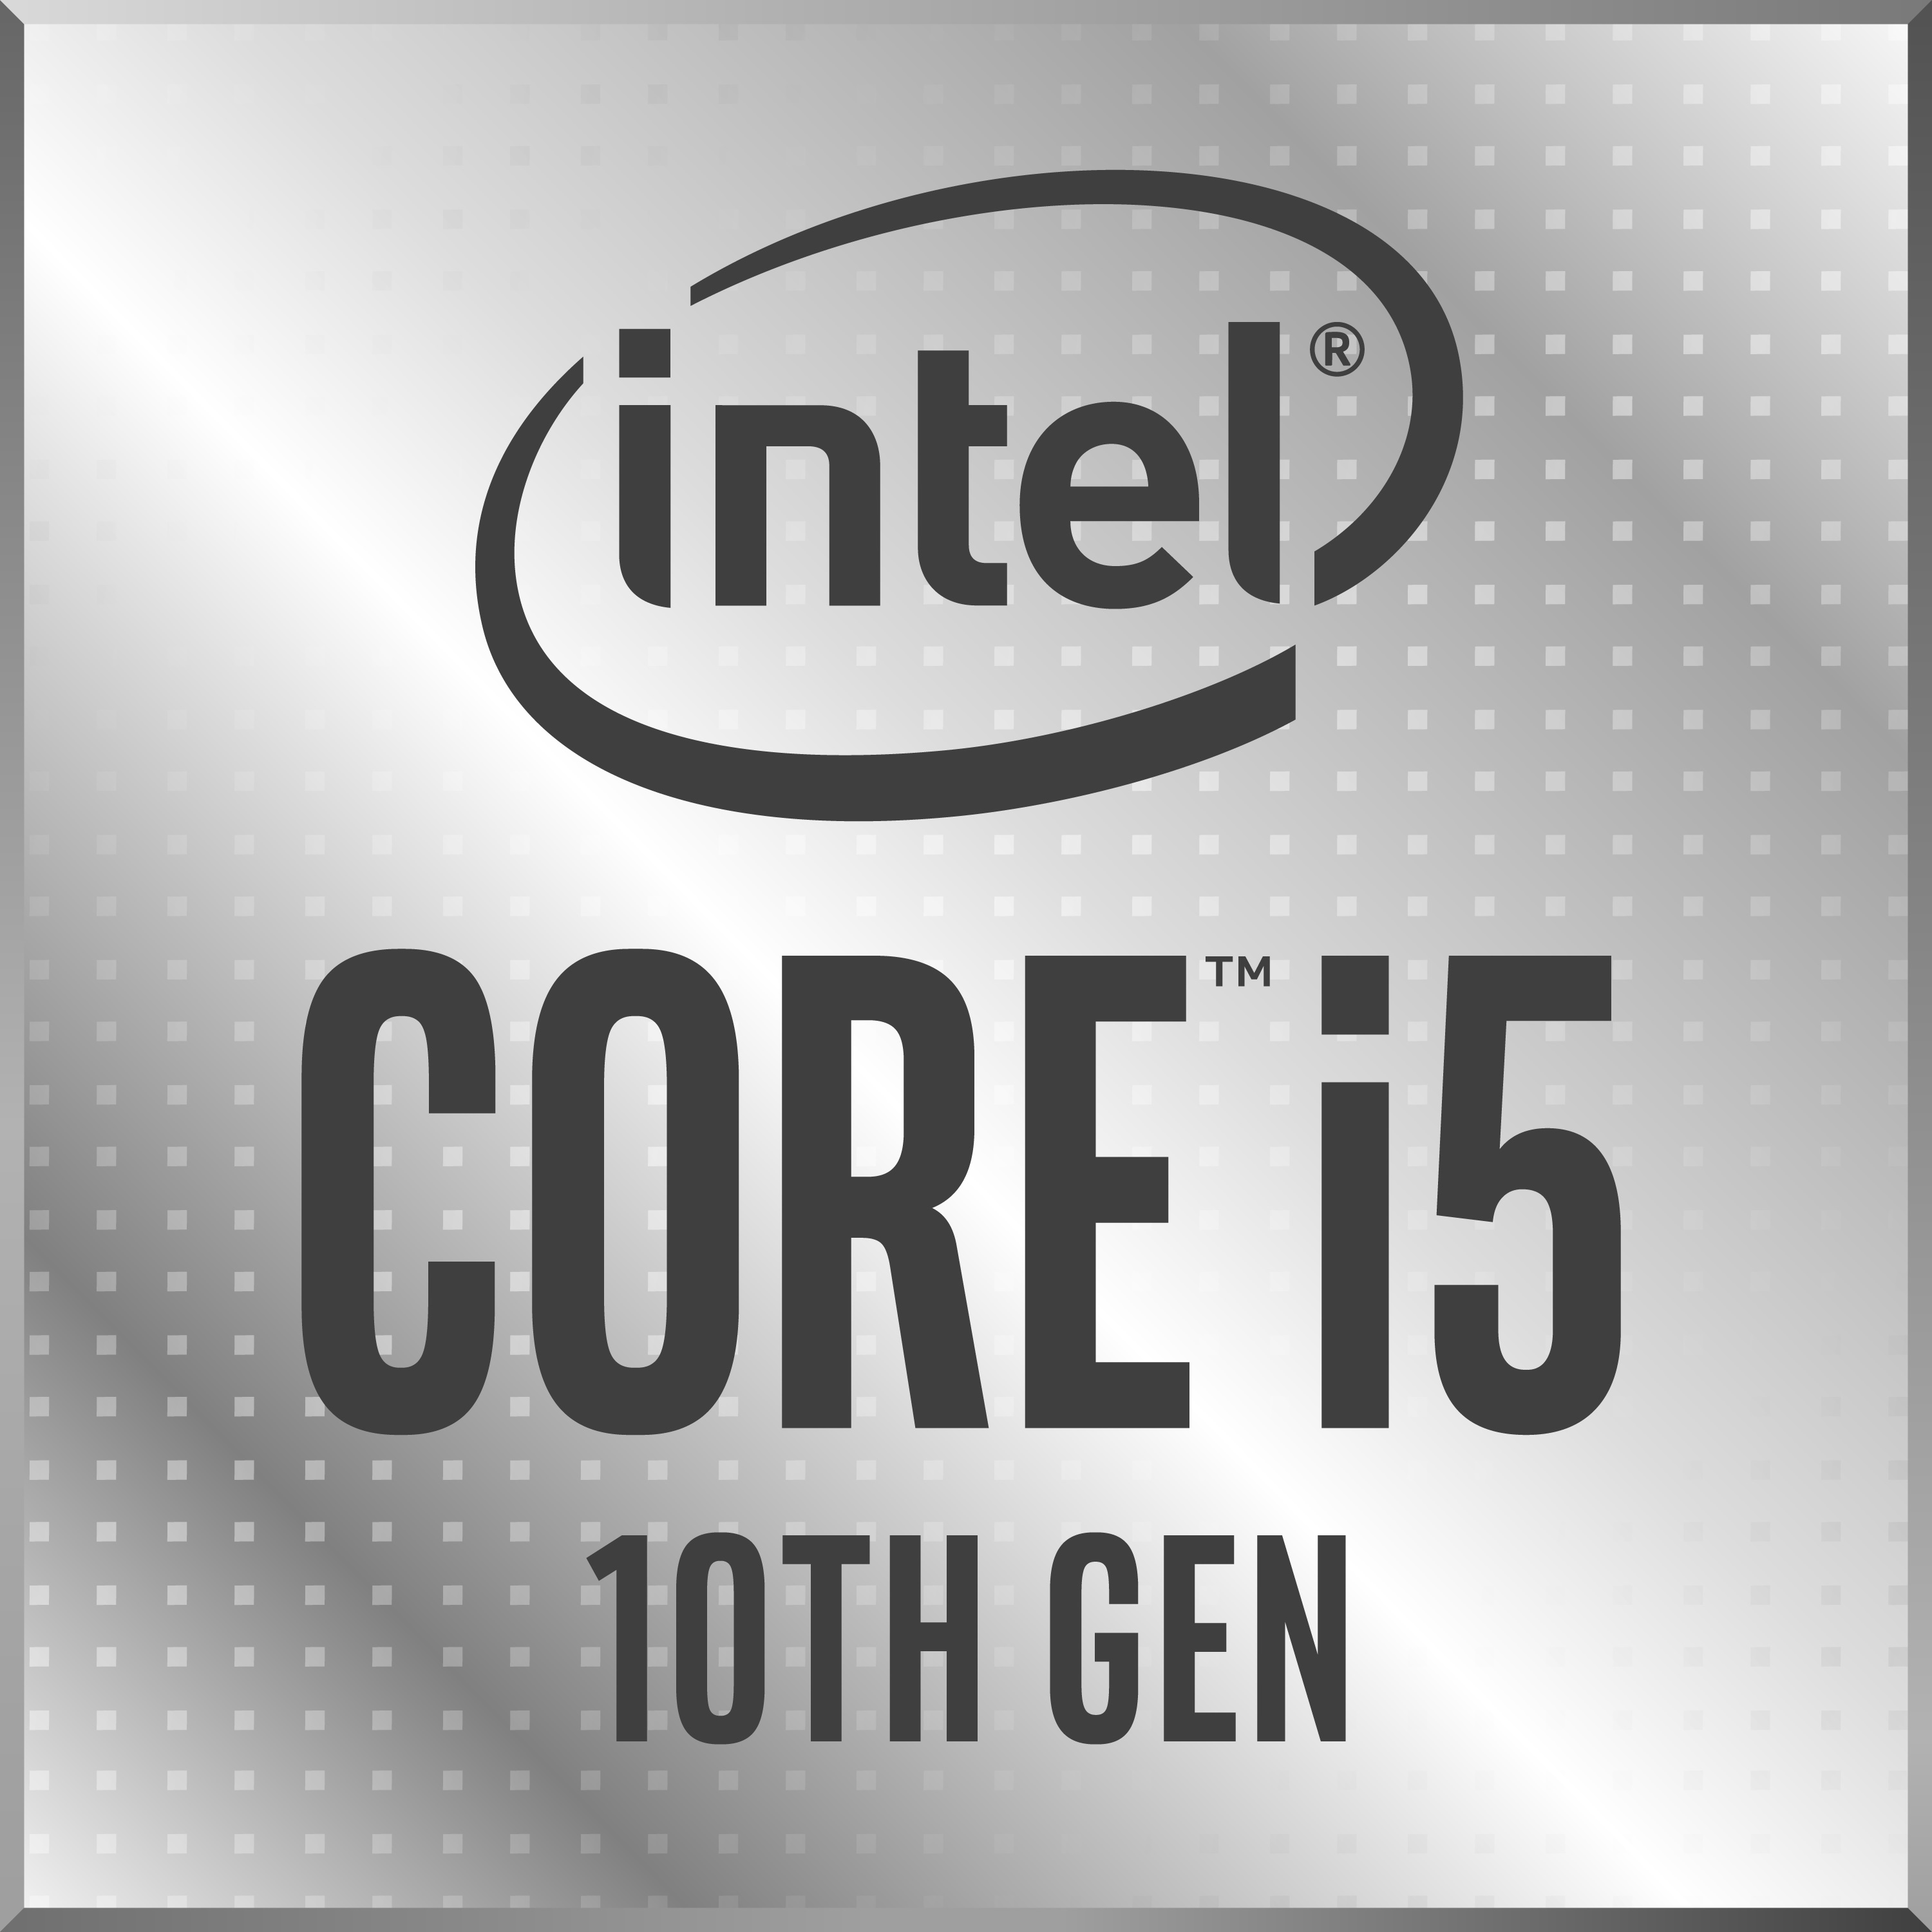 Intel Core i5-1035G1 Laptop Processor (Ice Lake) - NotebookCheck.net Tech